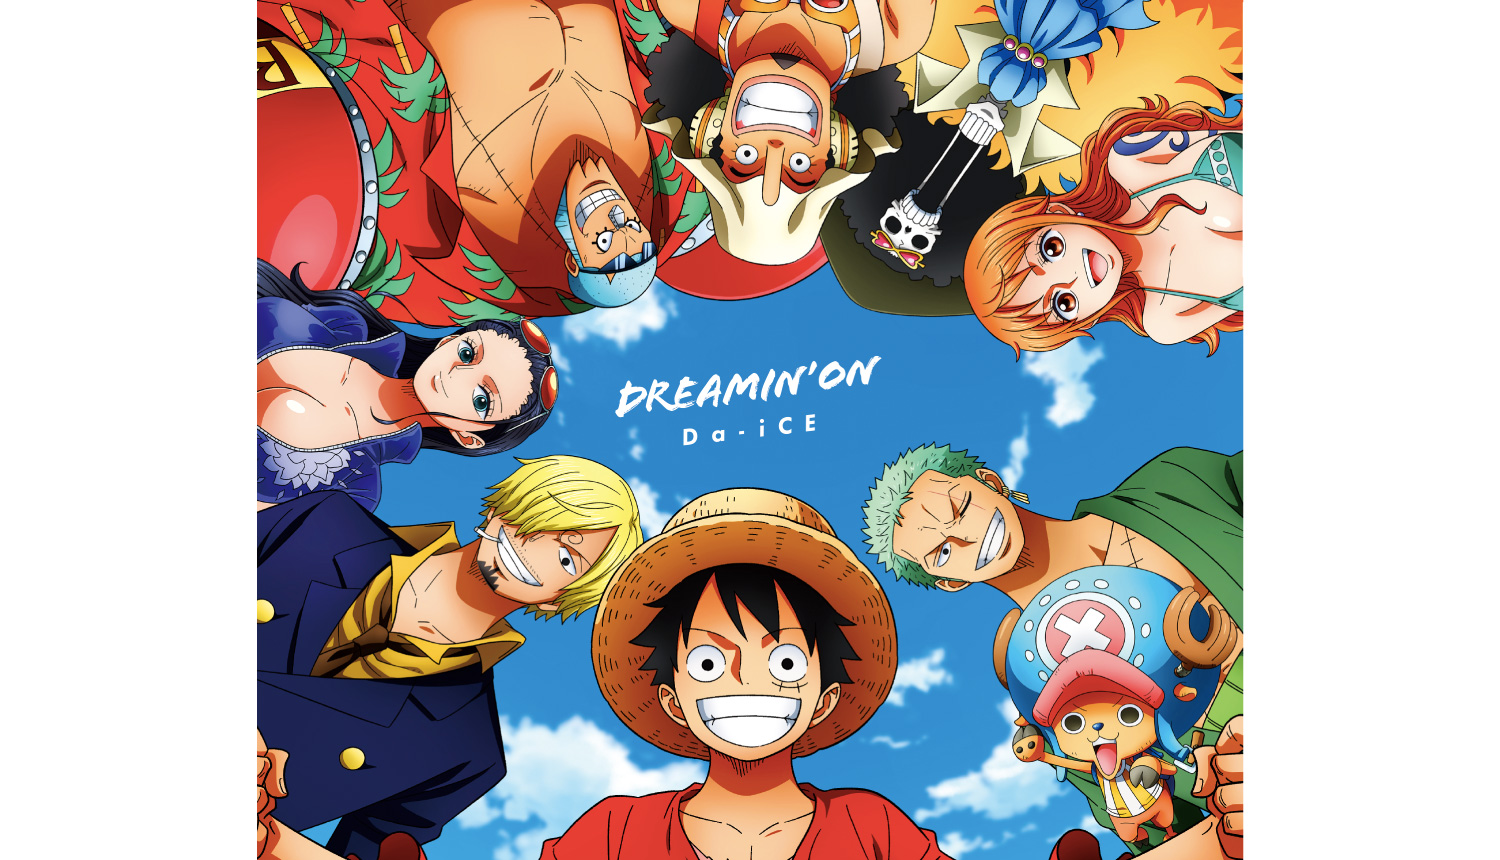 Da Ice Tvアニメ One Piece テーマソングのジャケットを公開 Moshi Moshi Nippon もしもしにっぽん